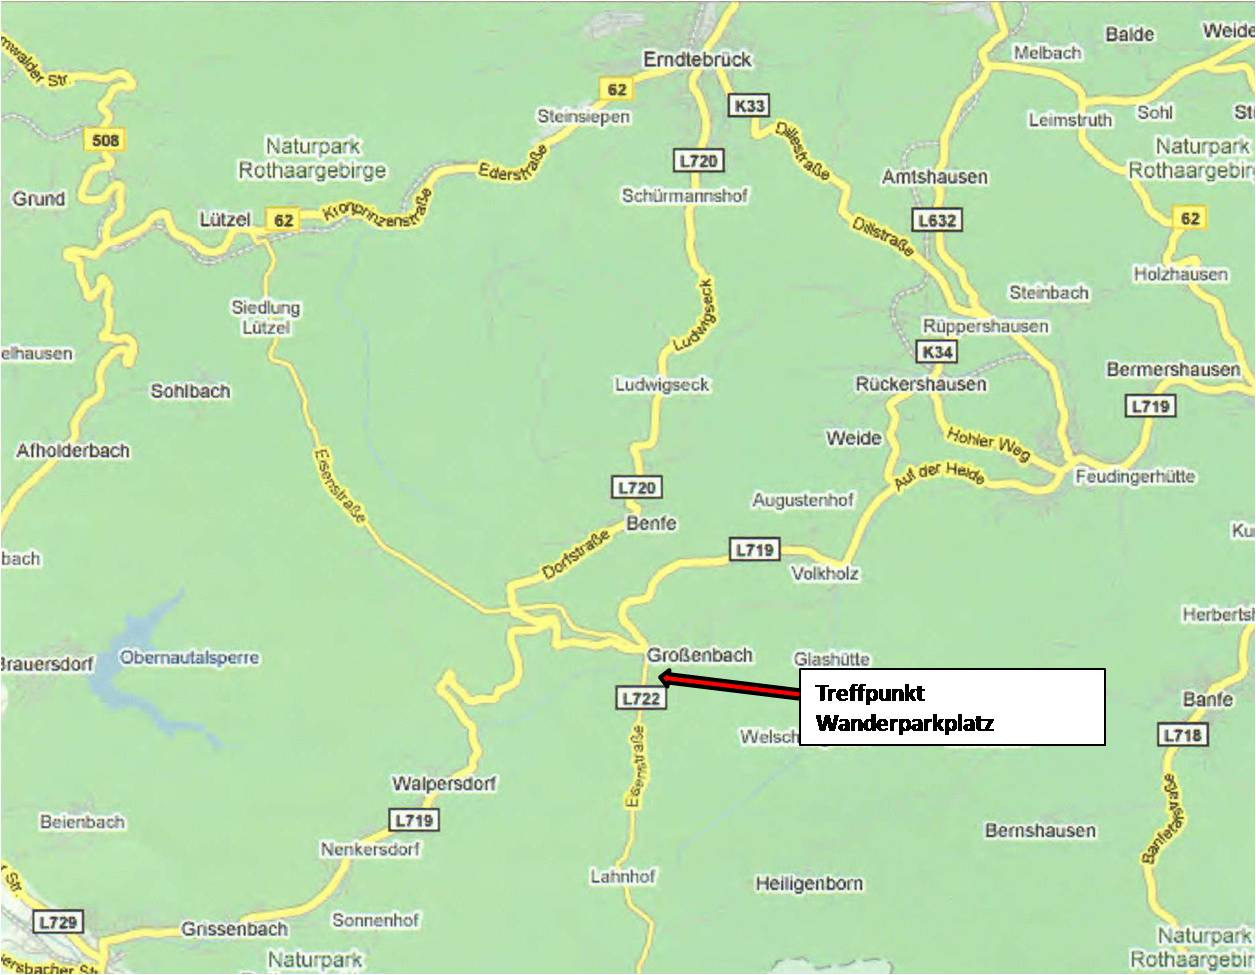 Anfahrtsbeschreibung: Sie fahren auf der L719 von Volkholz in Richtung Siegen. Die L719 kreuzt nach ca. 2 km die L 722.